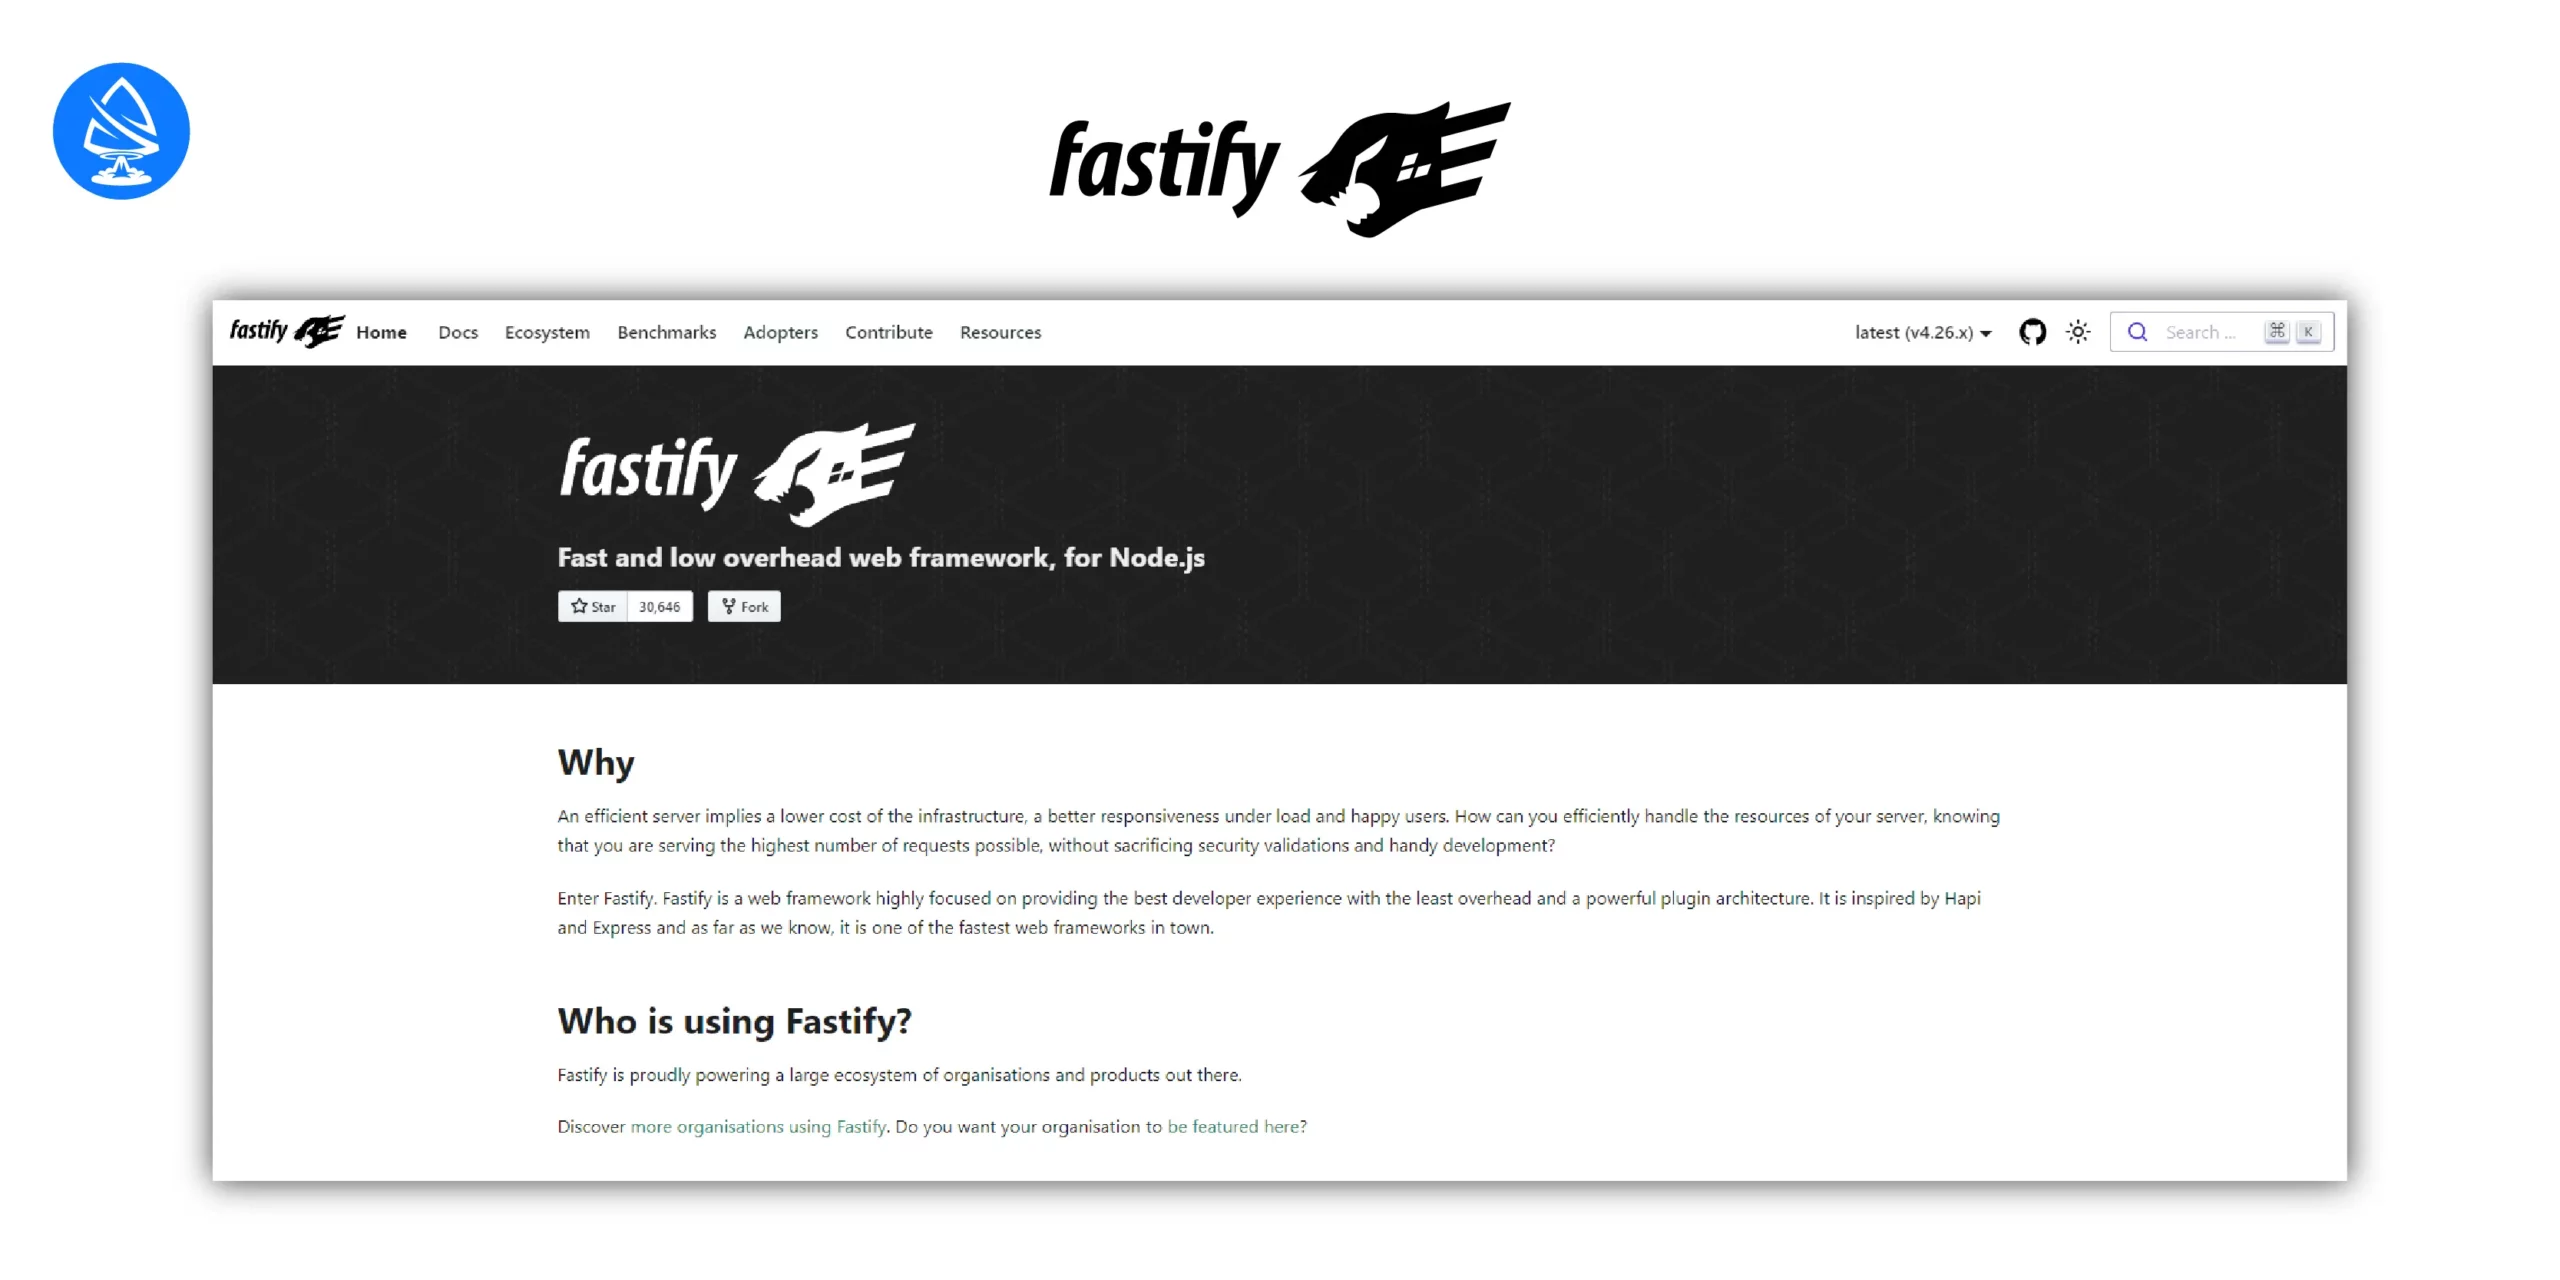 Fastify: A High-Performance Web Framework 